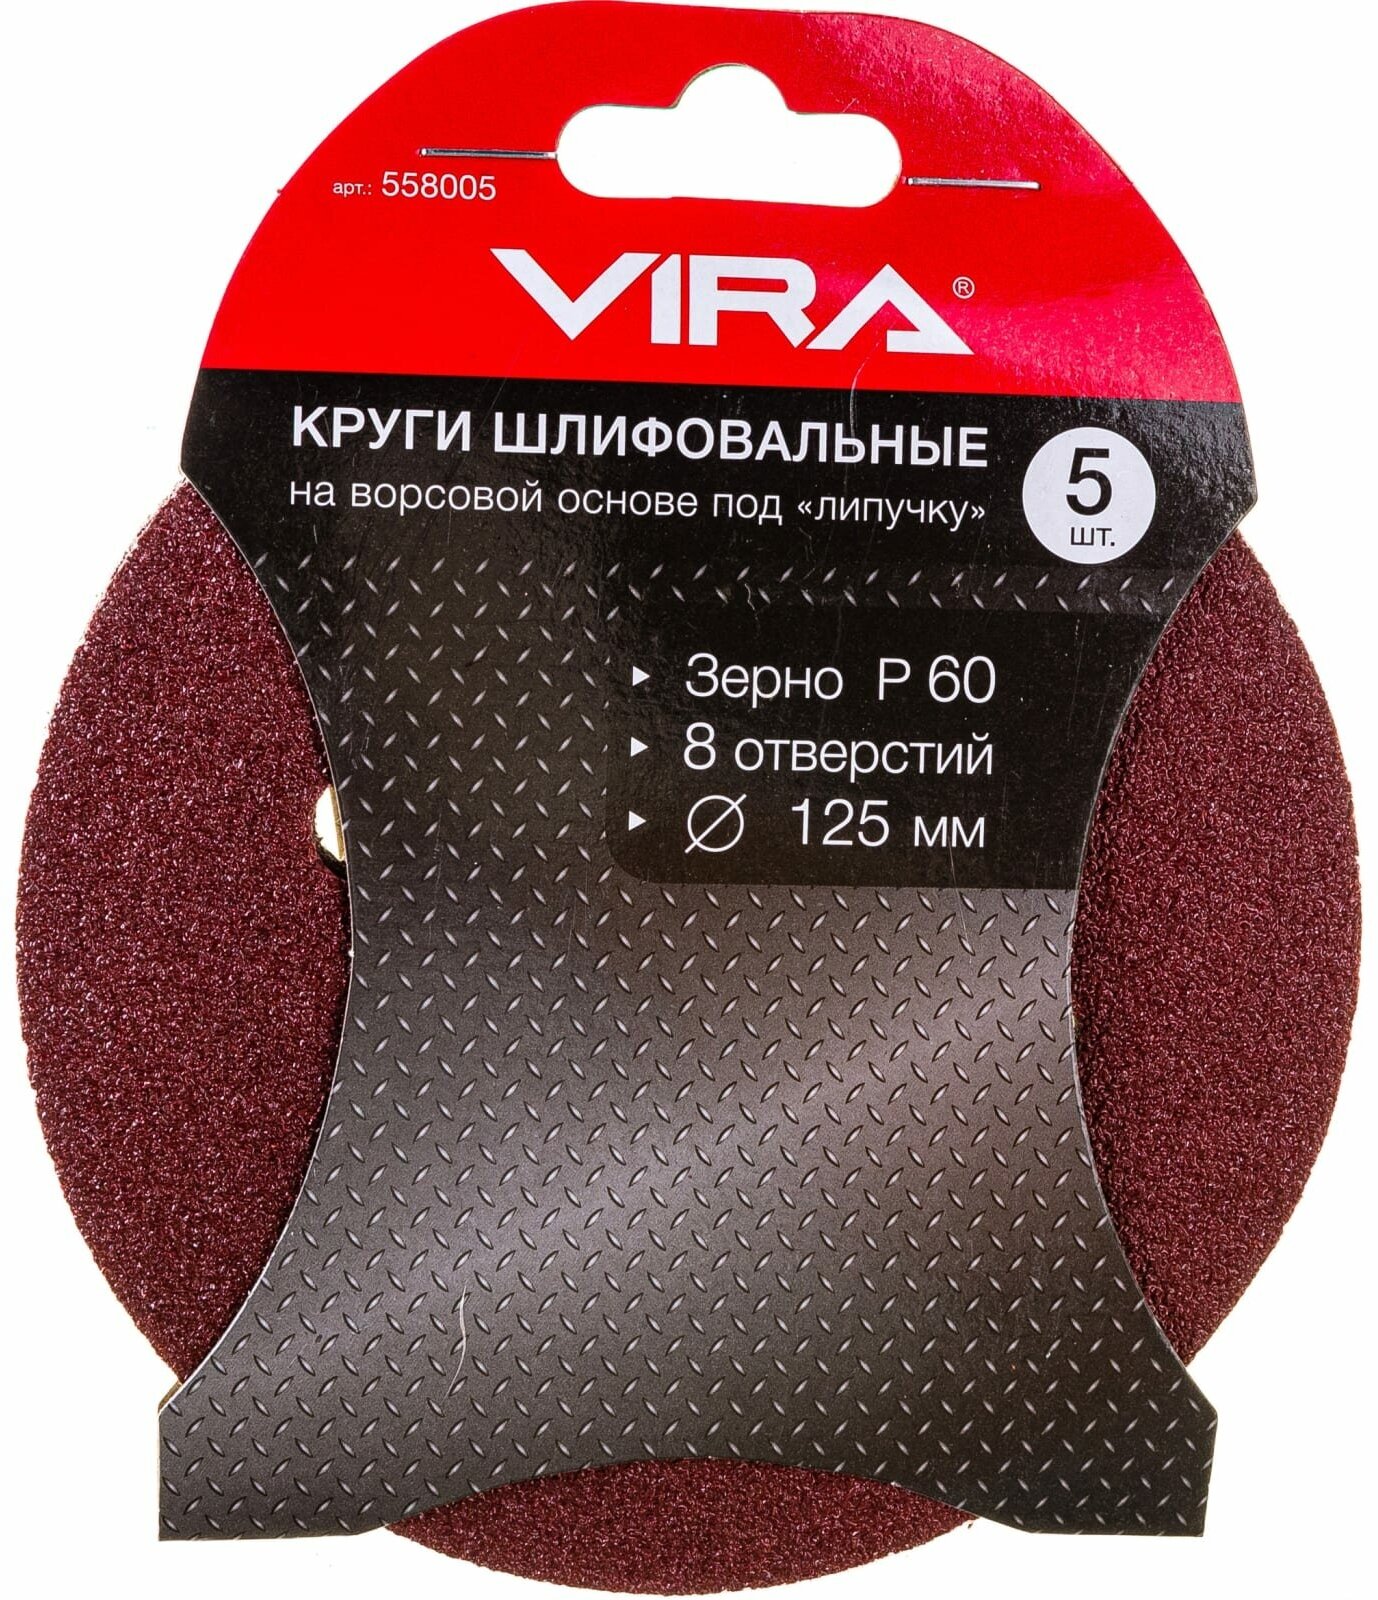 Круги абразивные Vira на ворсовой основе под "липучку", 8 отверстий, 125мм, 5 шт, P60